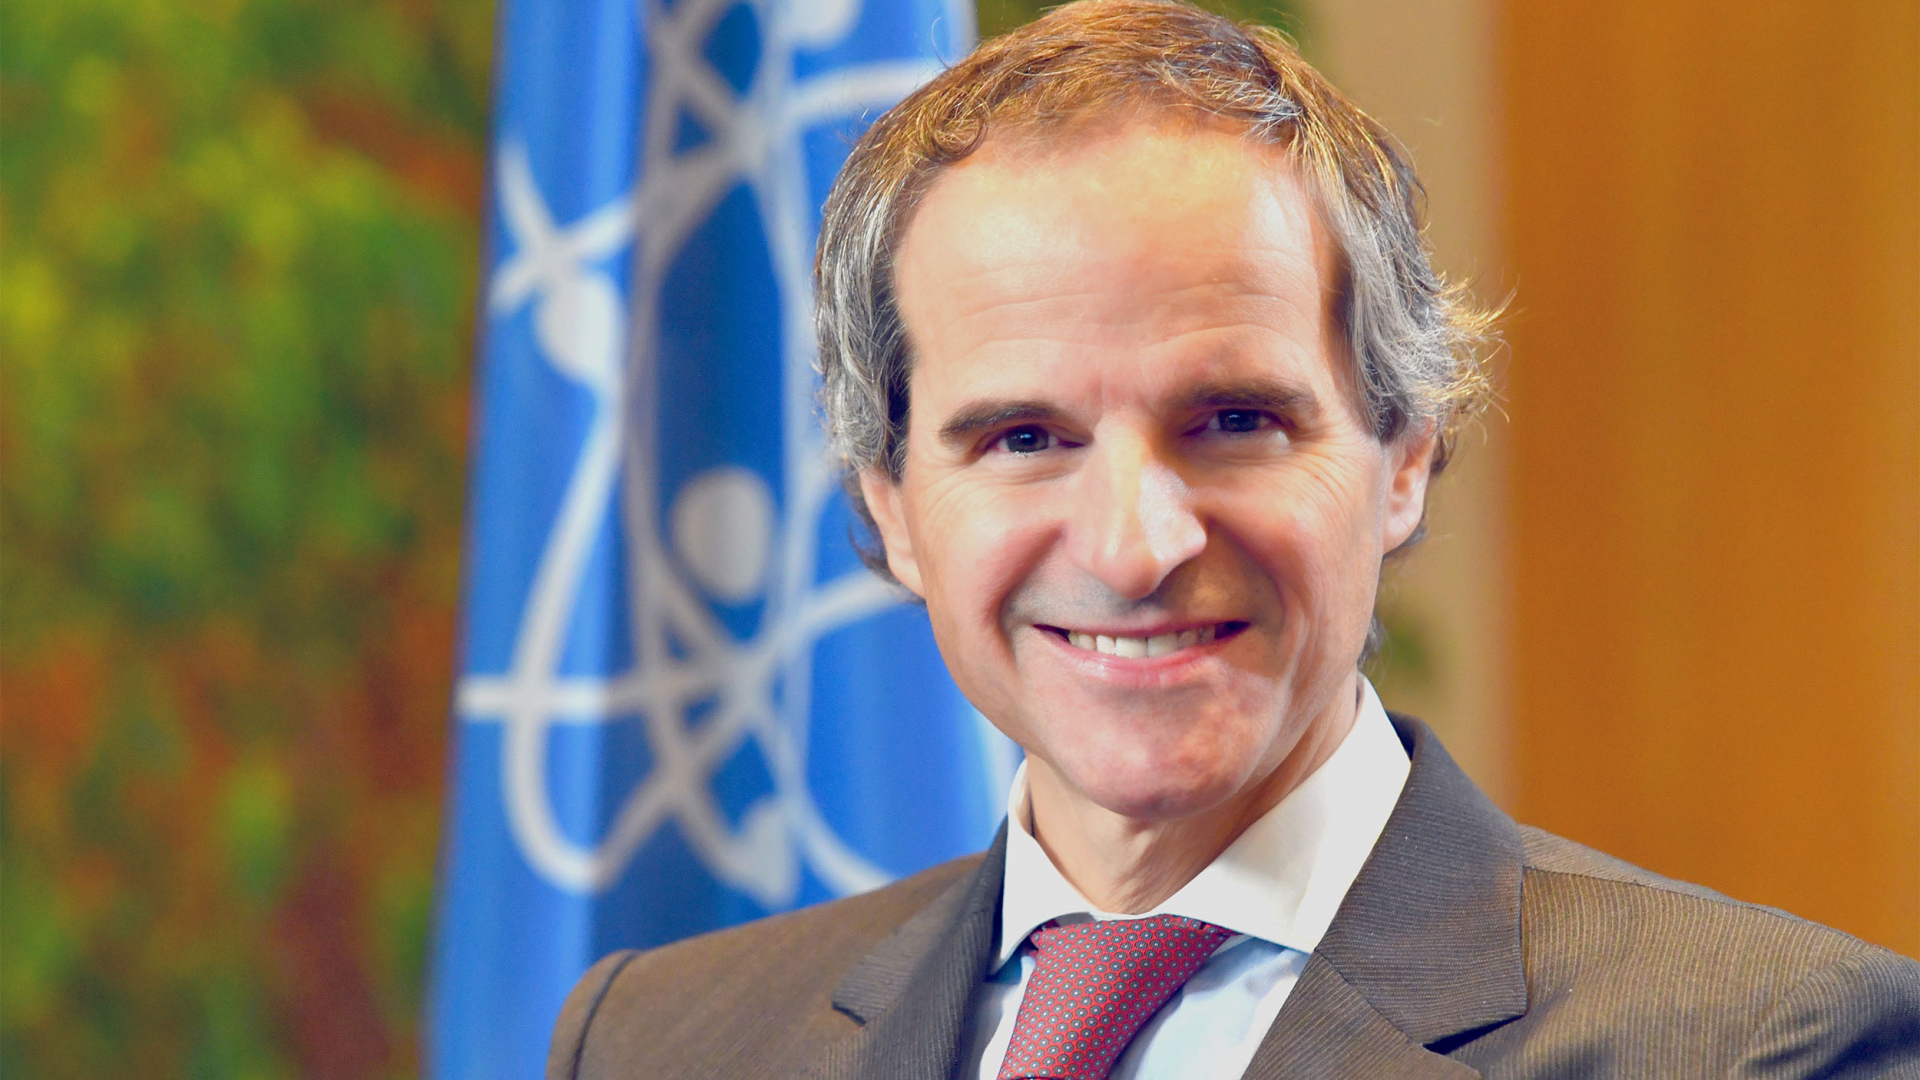 الوكالة: رافائيل ماريانو غروسي يتولى منصبه كمدير عام في ٣ كانون  الأول/ديسمبر ٢٠١٩ | IAEA